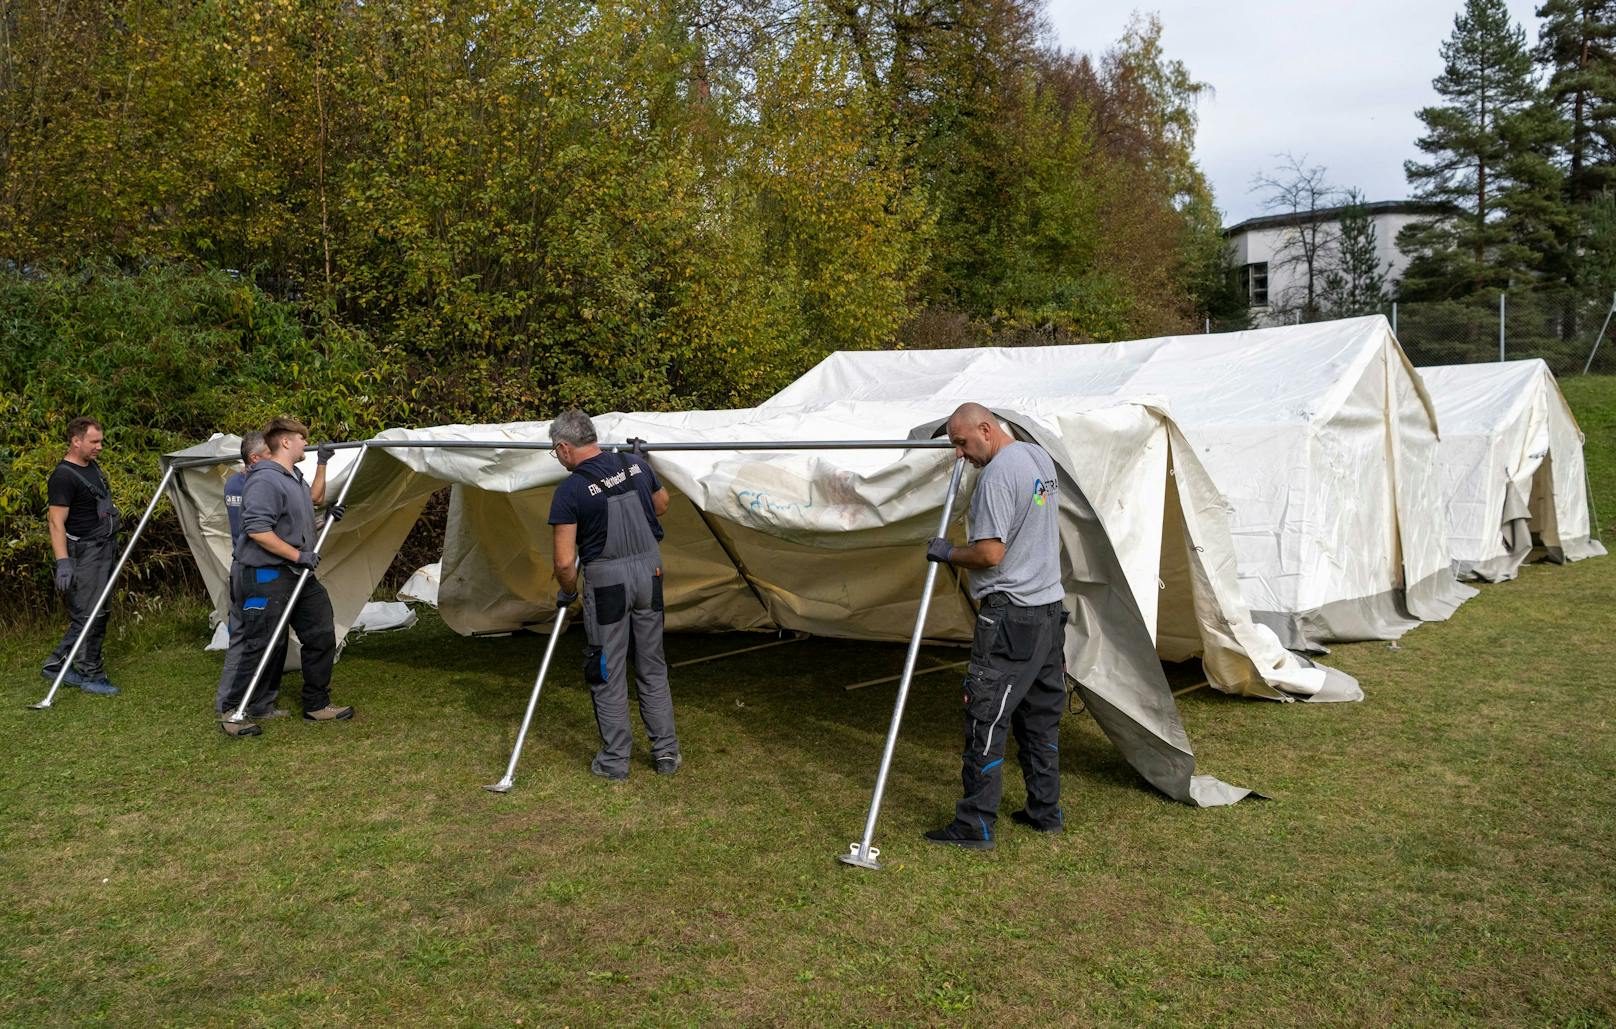 Weiter Wirbel um Asyl-Zelte – Gemeinden protestieren